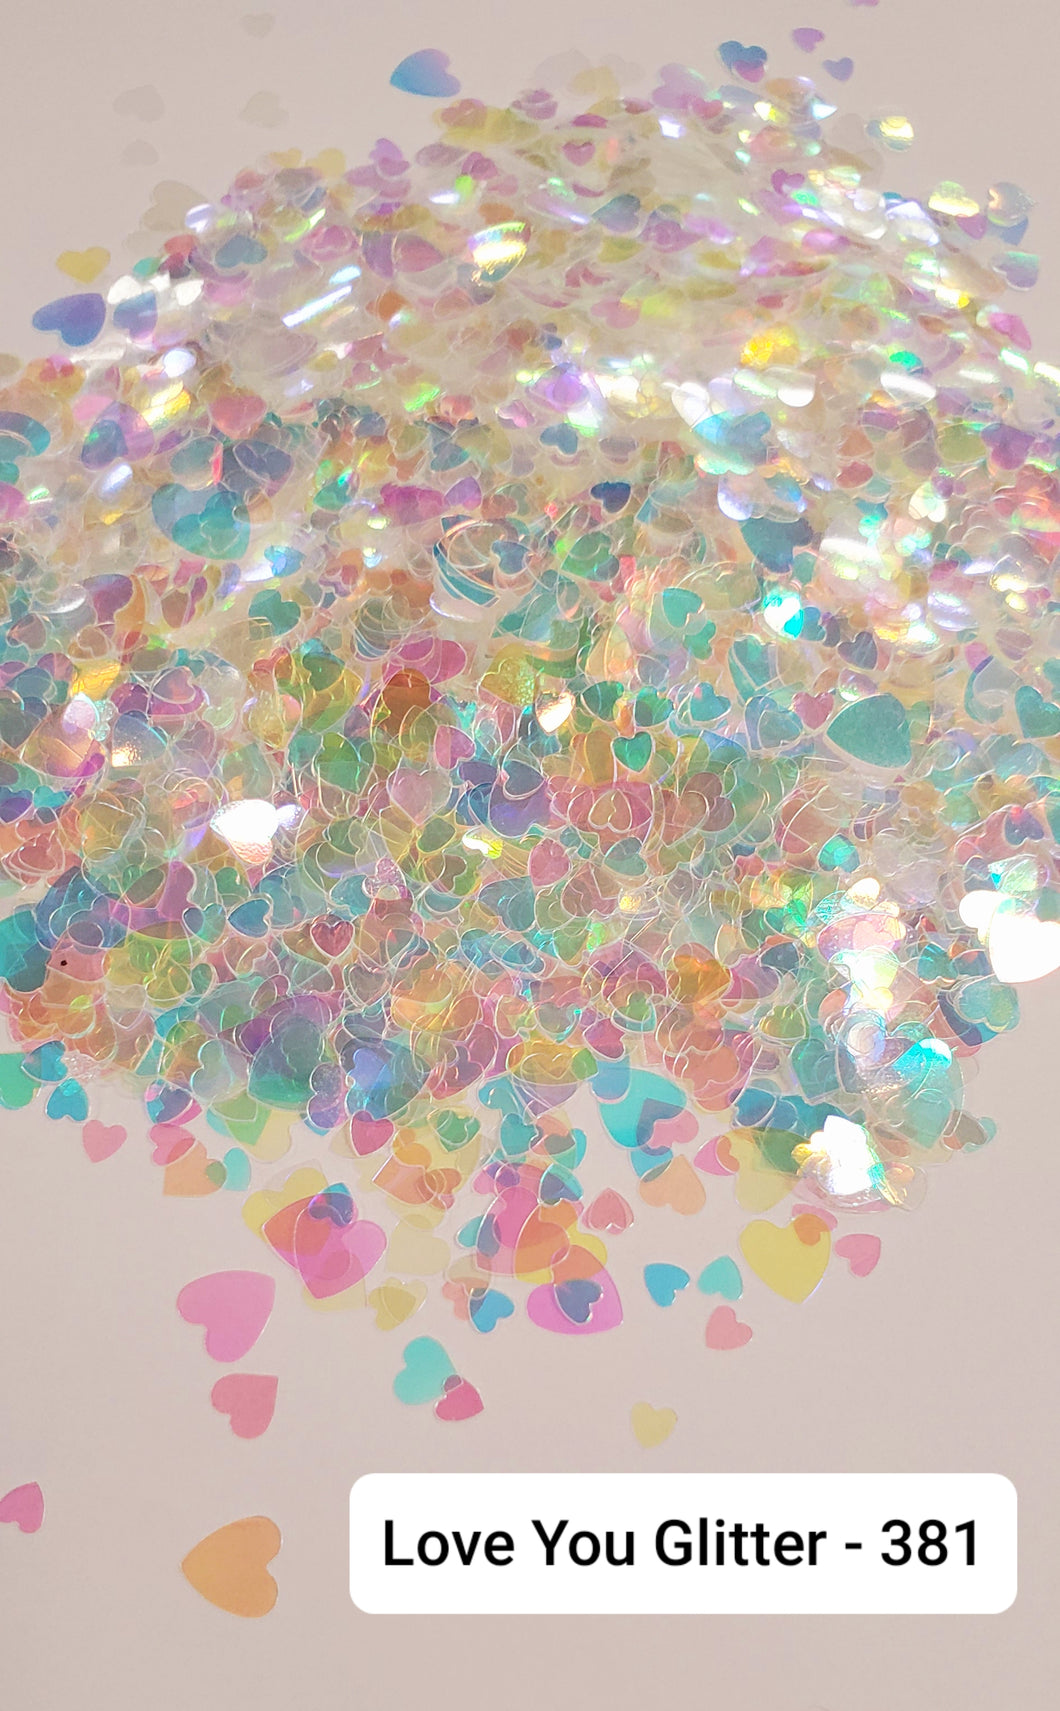 Love You Glitter- 381